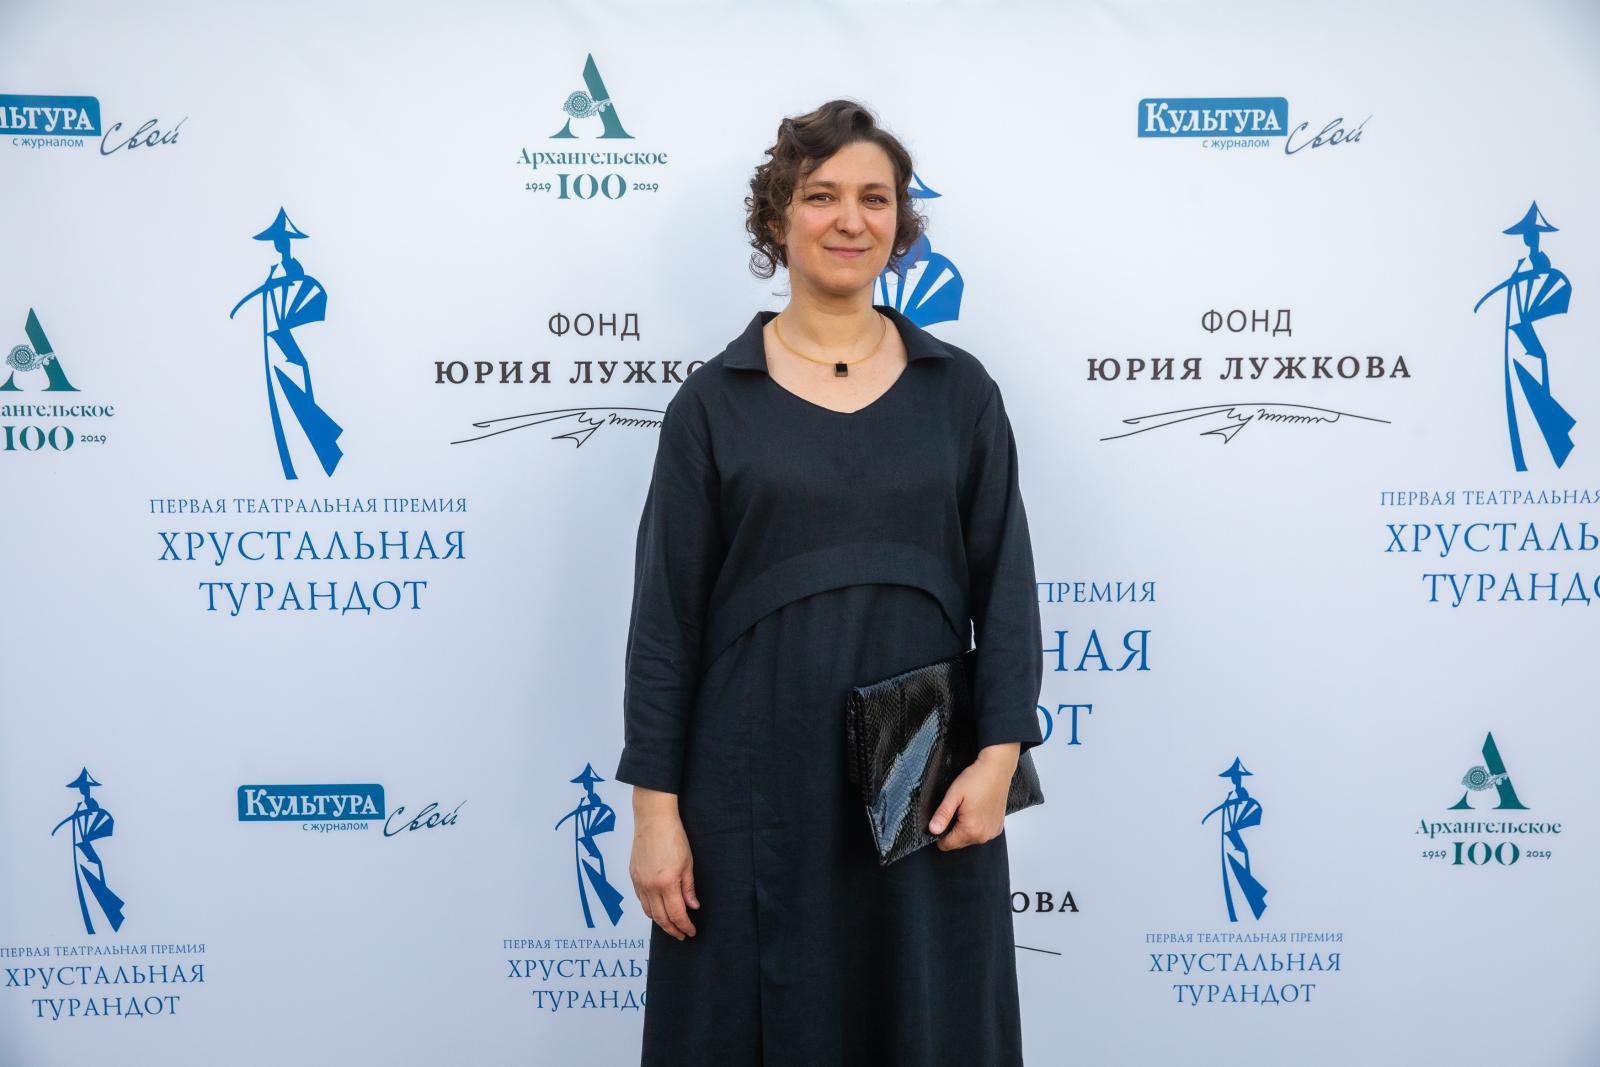 Олеся Железняк: вдохновение для миллионов женщин